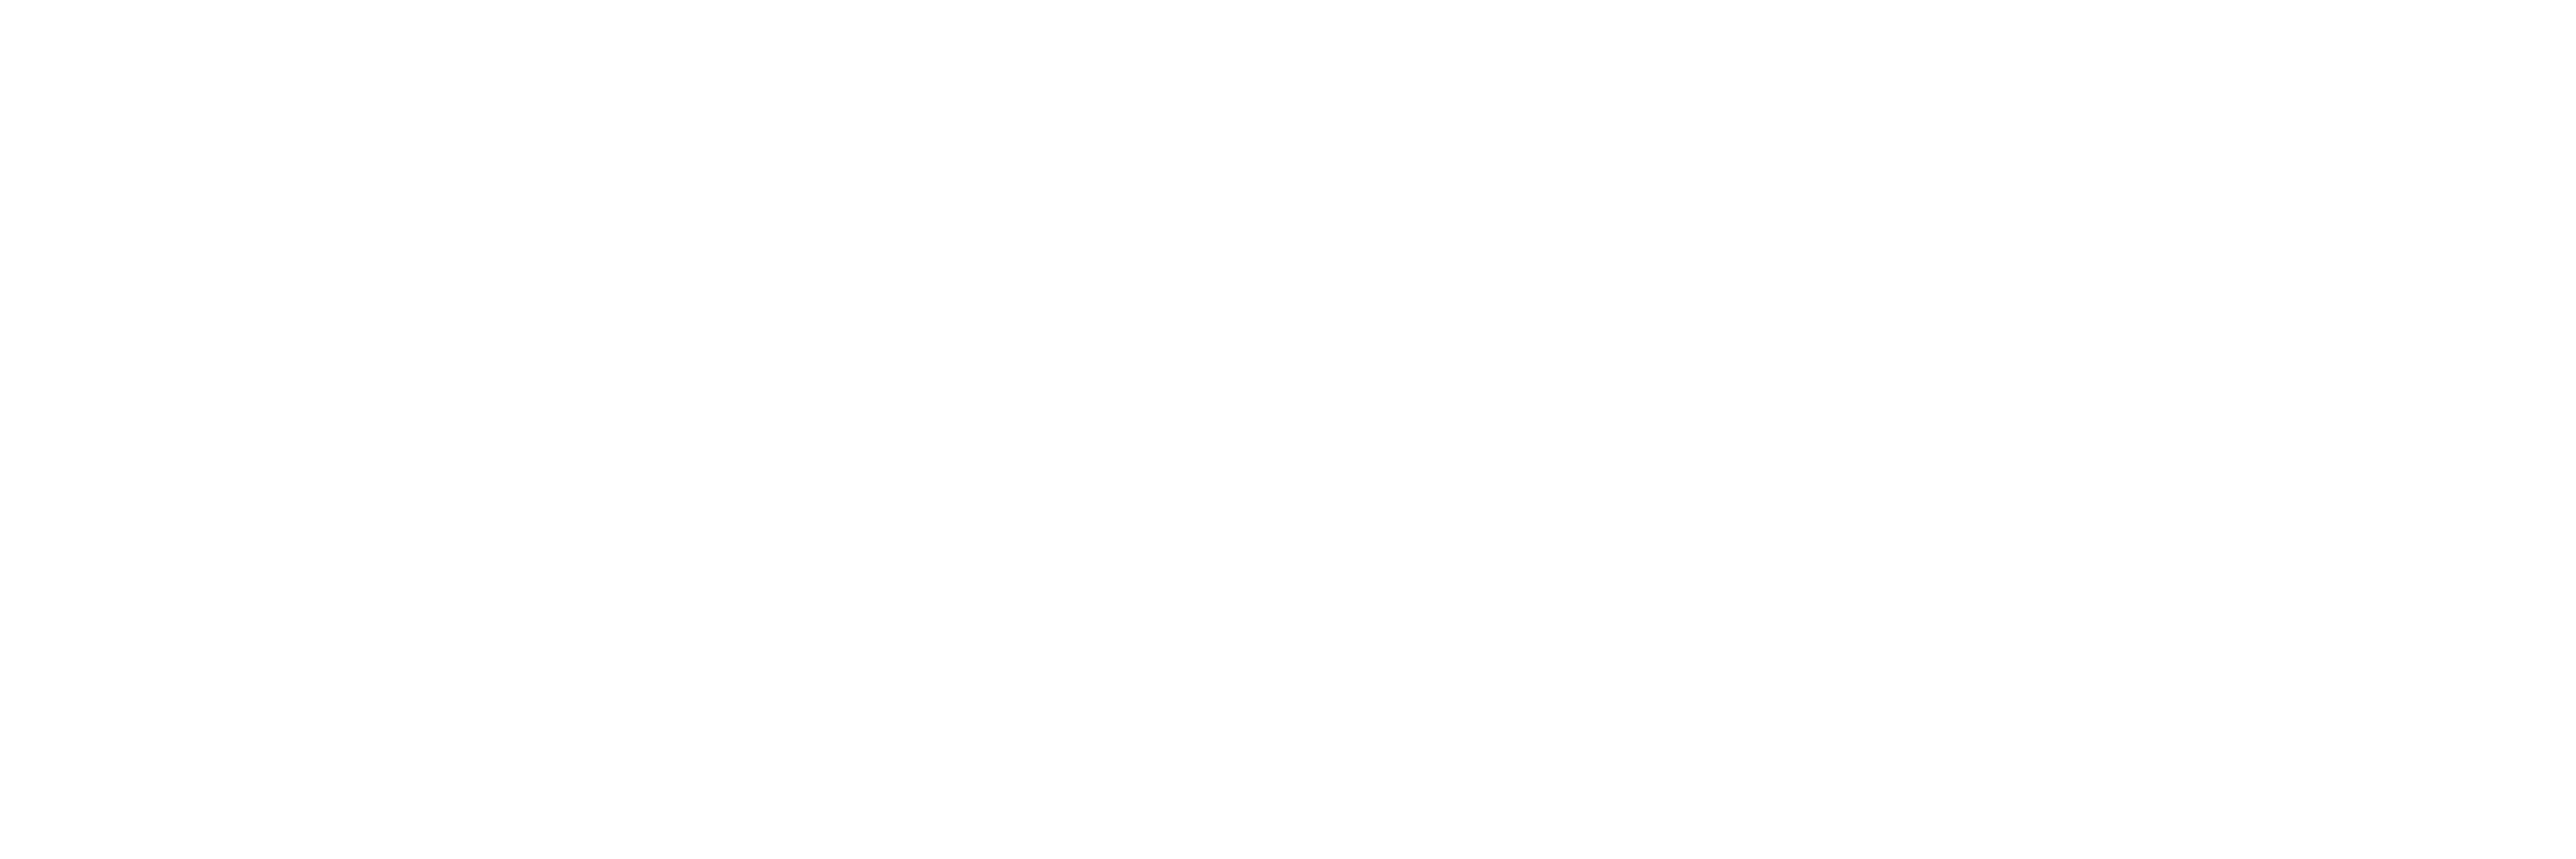 Delux parketi